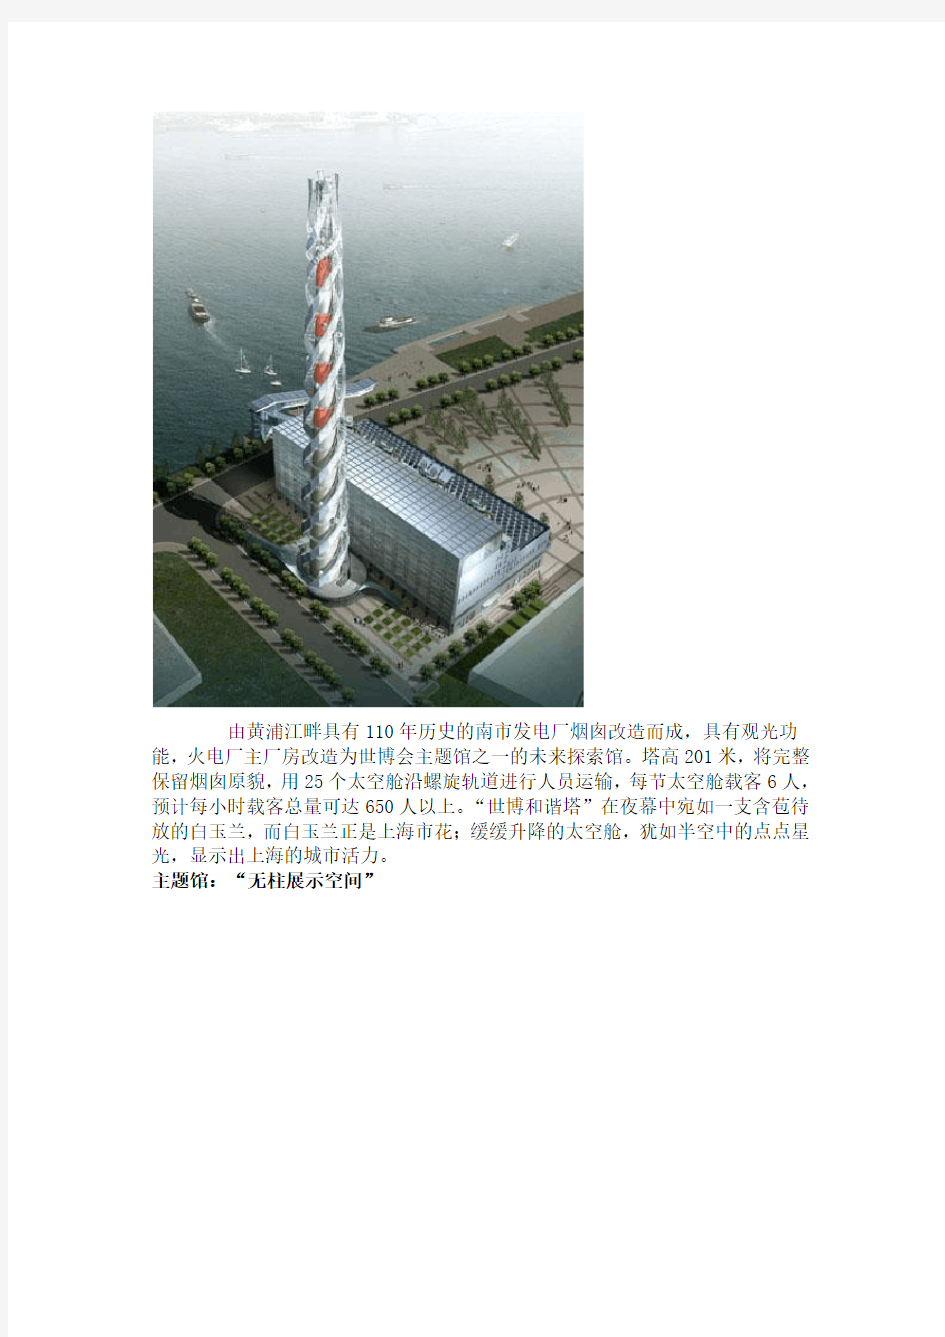 2010年上海世博会各国场馆设计理念介绍.doc